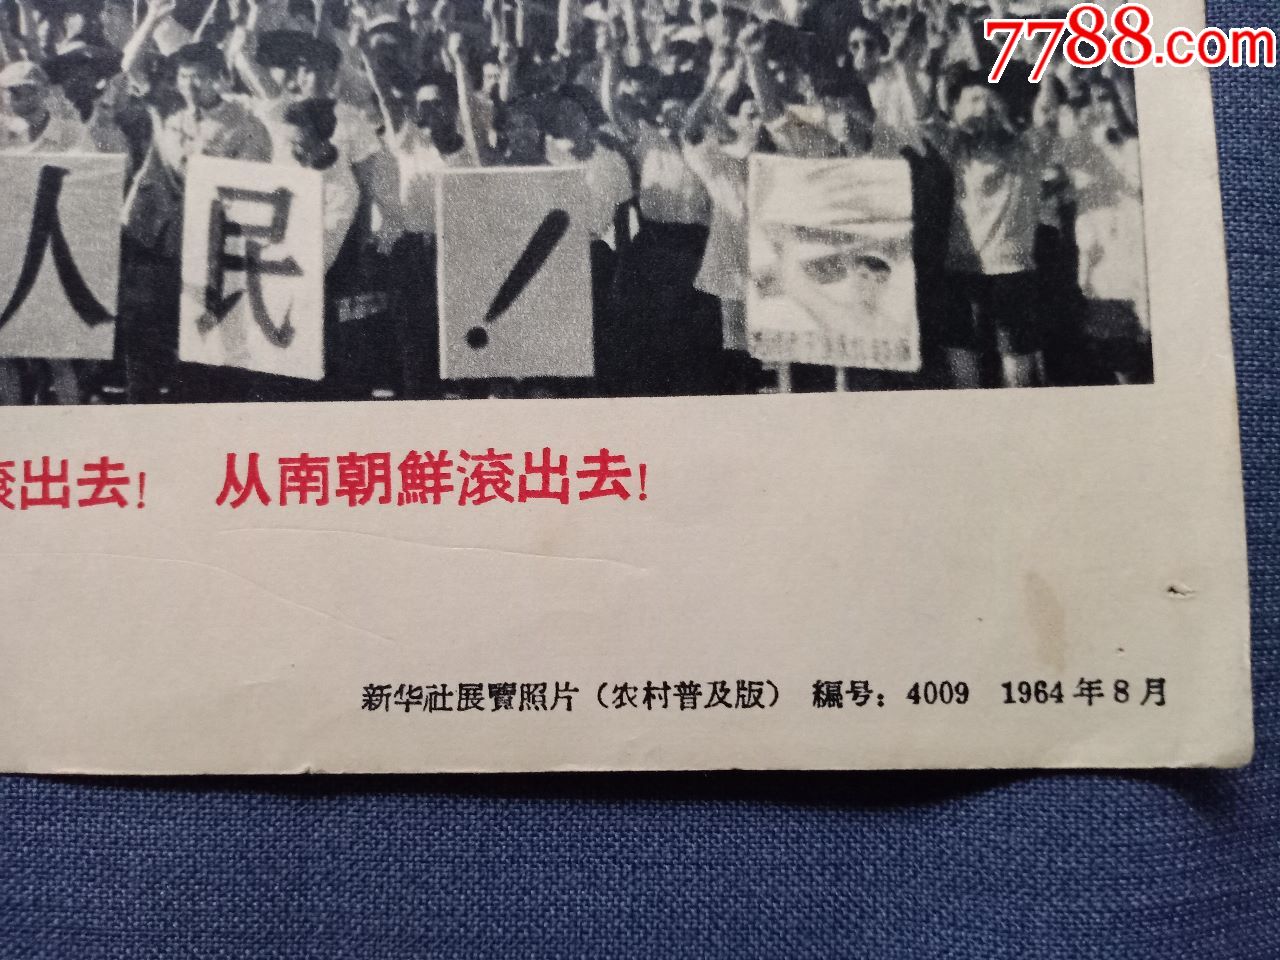 宣传照:1964年《坚决支援越南人民反对美国武装侵略》